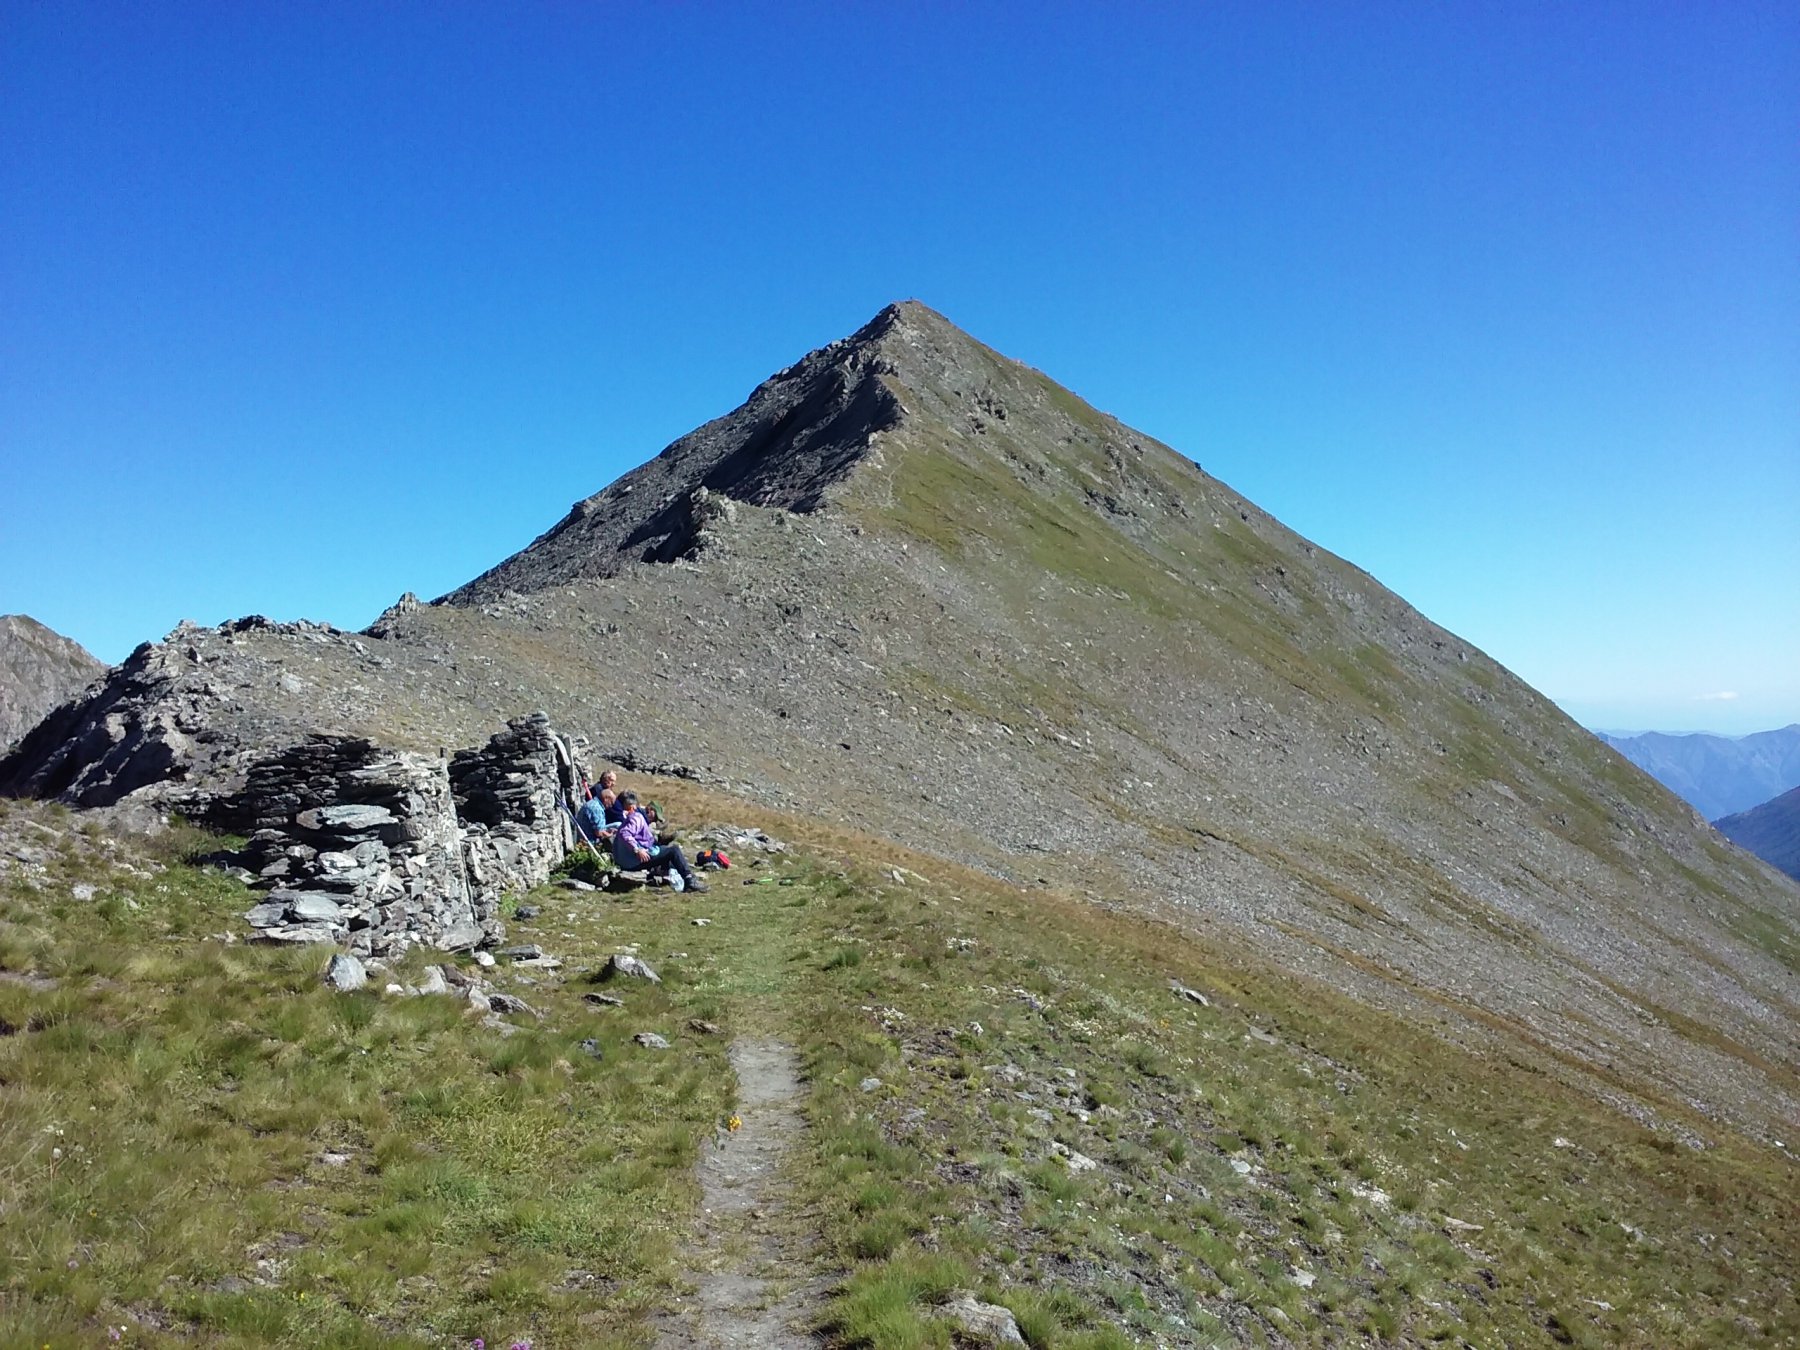 La cima Frappier vista dal passo Frappier (a destra del filo di cresta si intravede la traccia di discesa).